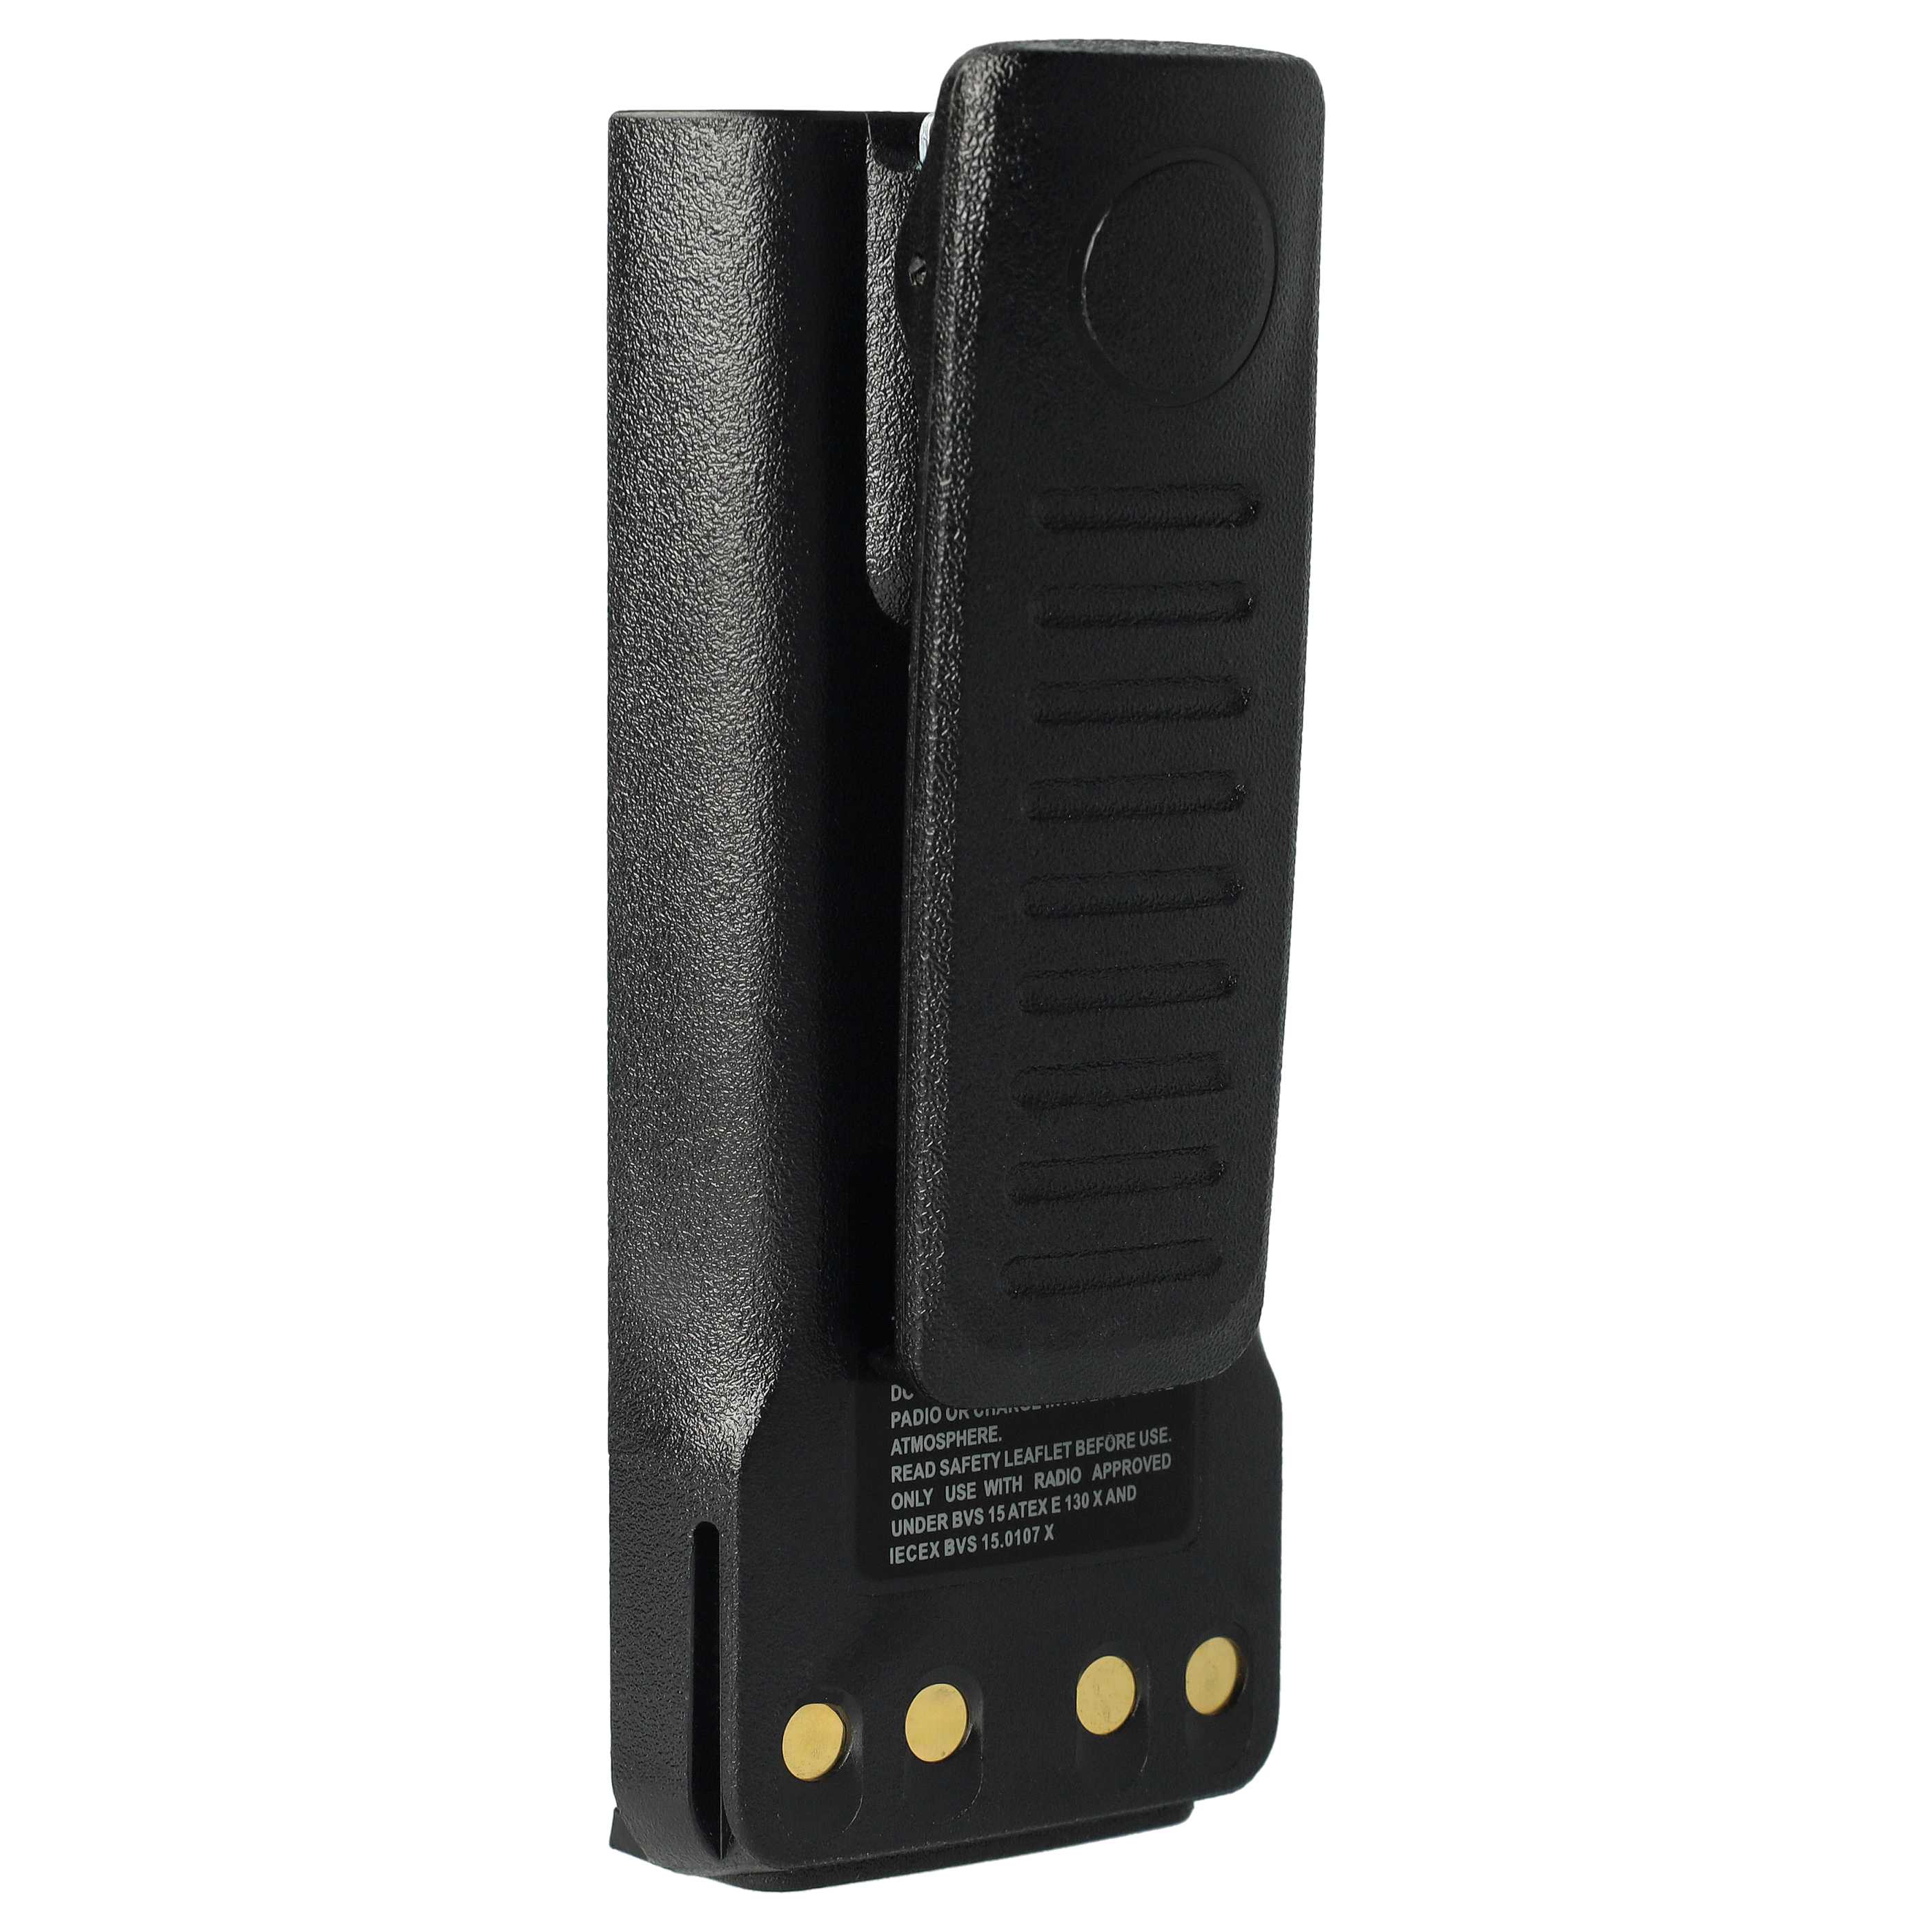 Batterie remplace Motorola NNTN8570B, NNTN8570A, NNTN8570 pour radio talkie-walkie - 1250mAh 7,6V Li-ion